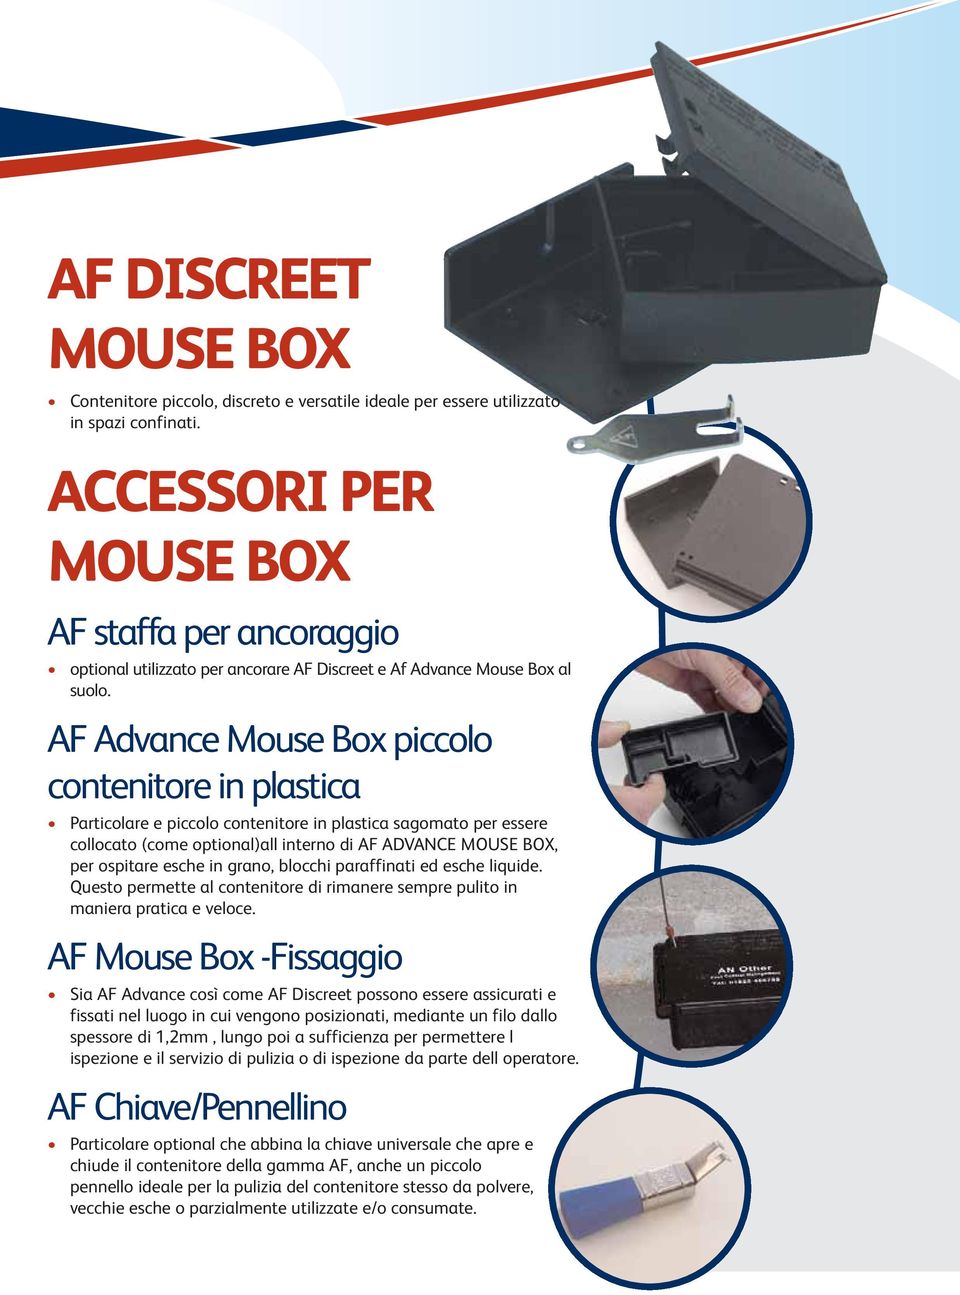 AF Advance Mouse Box piccolo contenitore in plastica Particolare e piccolo contenitore in plastica sagomato per essere collocato (come optional)all interno di AF ADVANCE MOUSE BOX, per ospitare esche